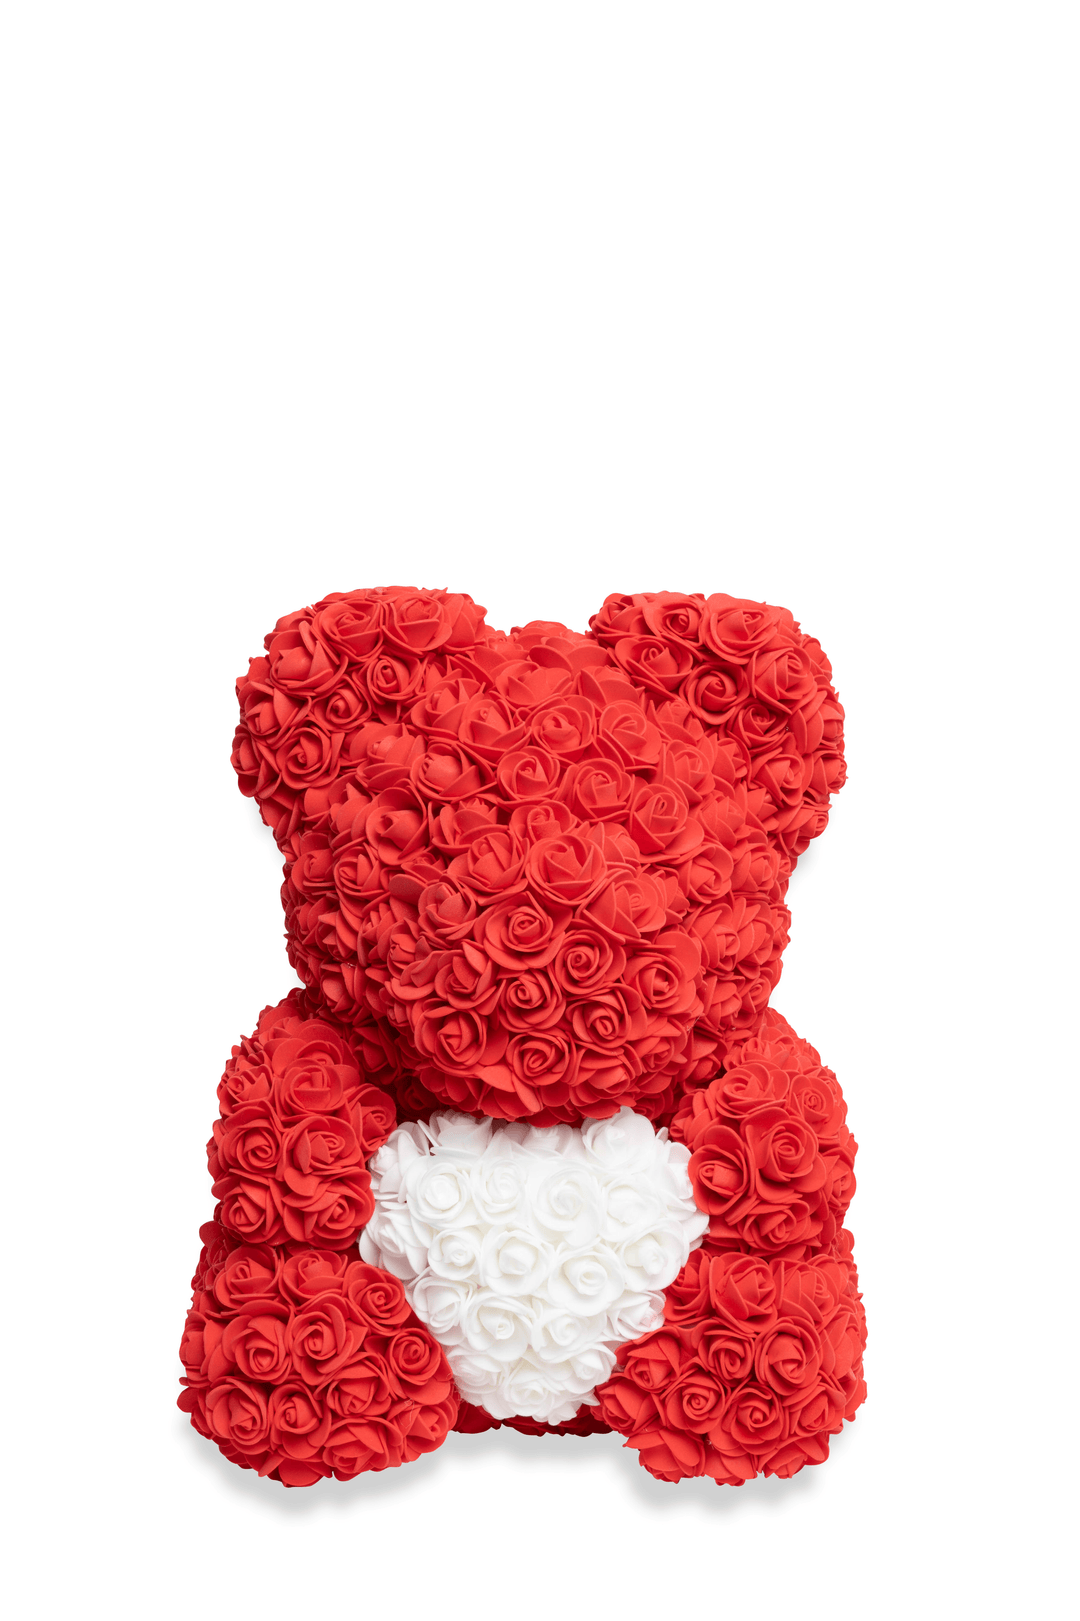 الدب الوردي - أحمر بقلب أبيض